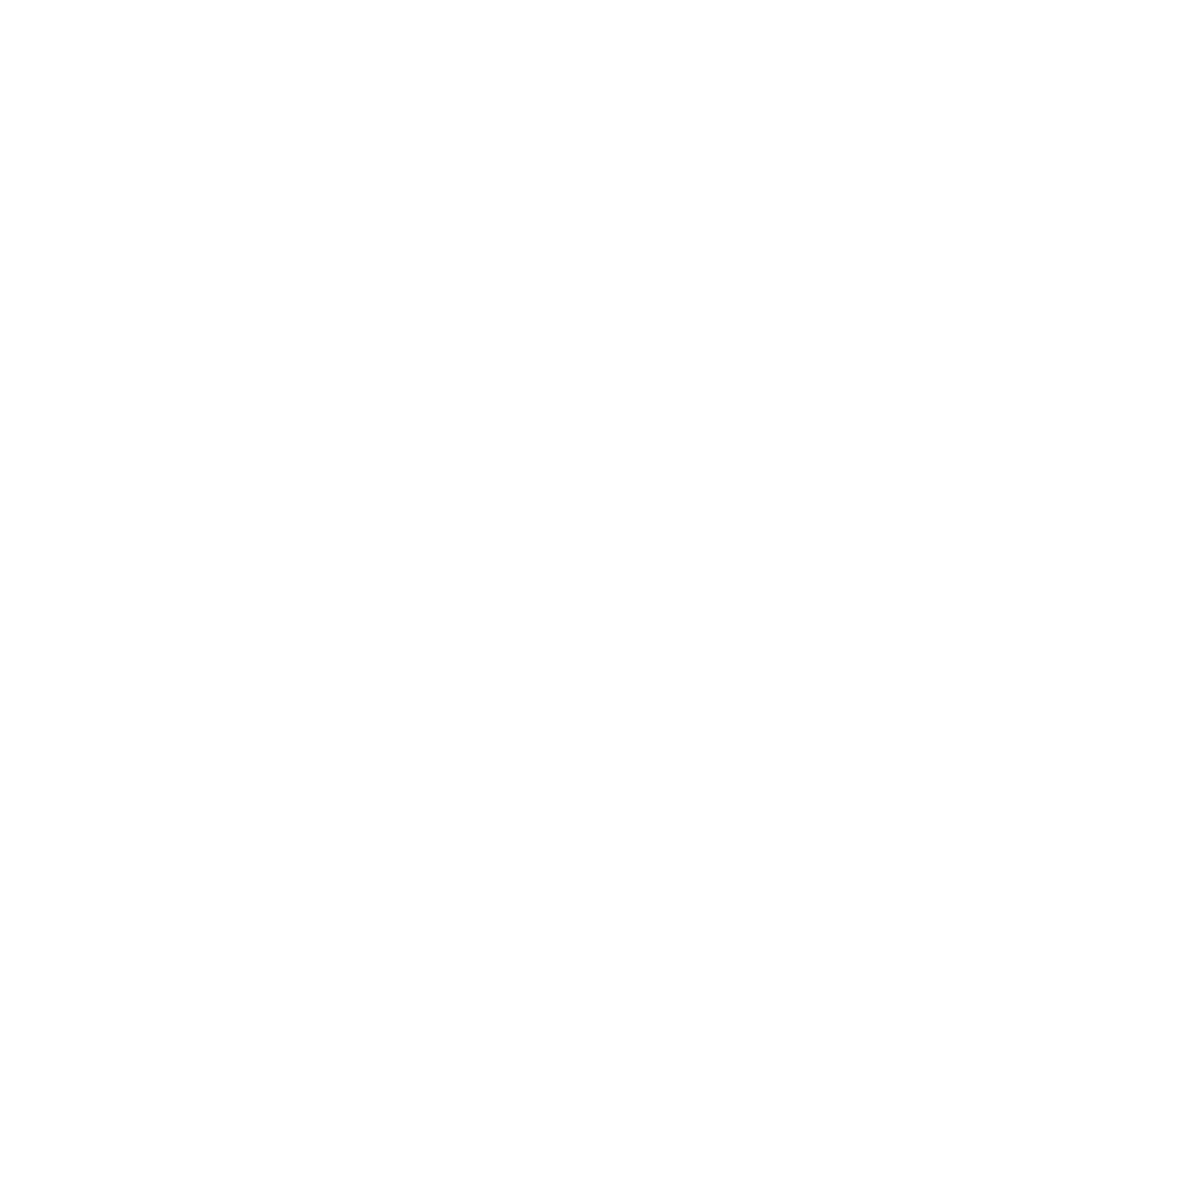 Panduro photo